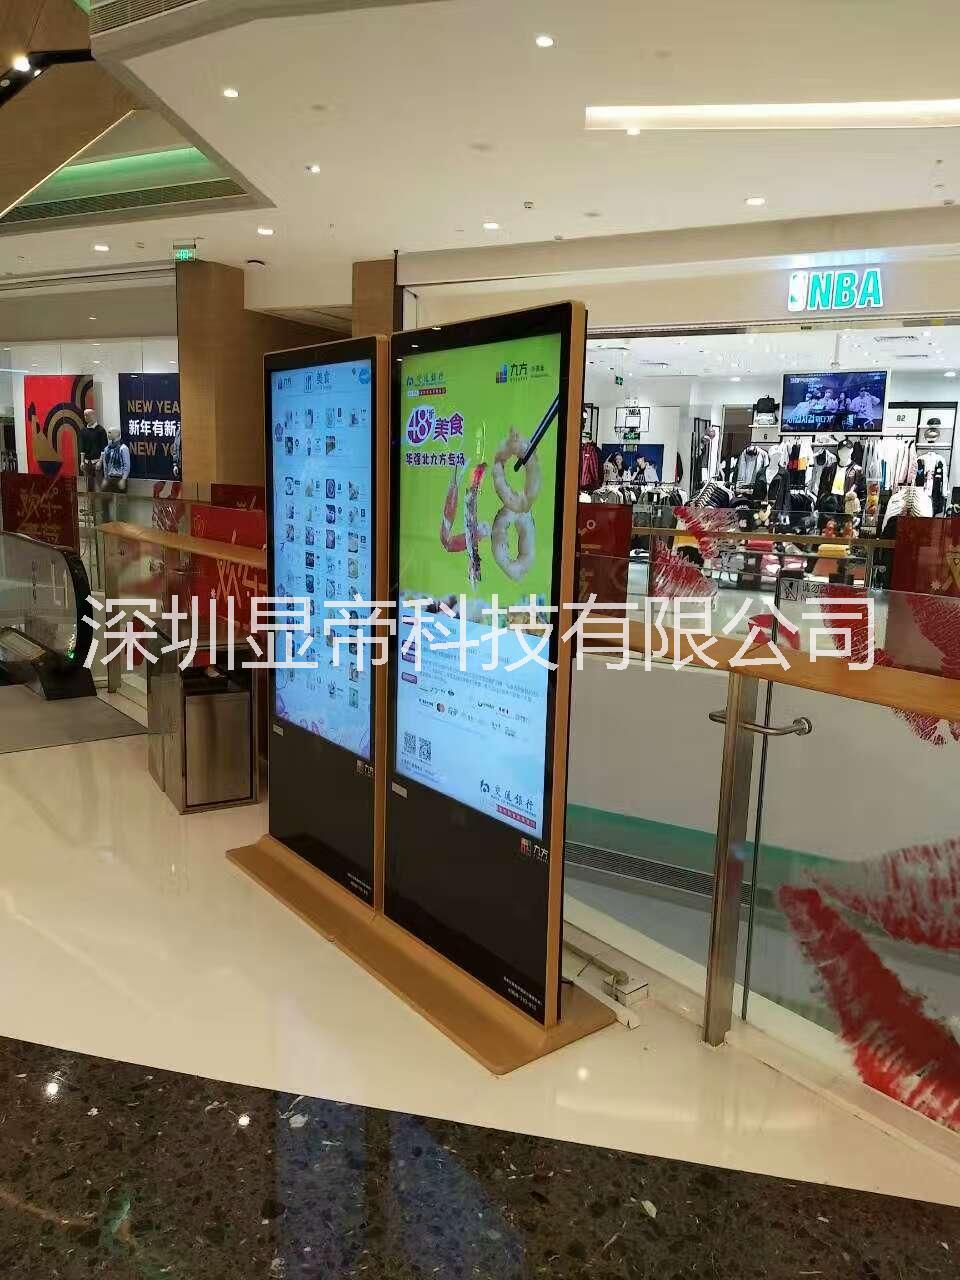 深圳广告显示屏 落地广告智能终端 多媒体广告显示终端 生产厂家直营价格优惠 提供专业设计方案